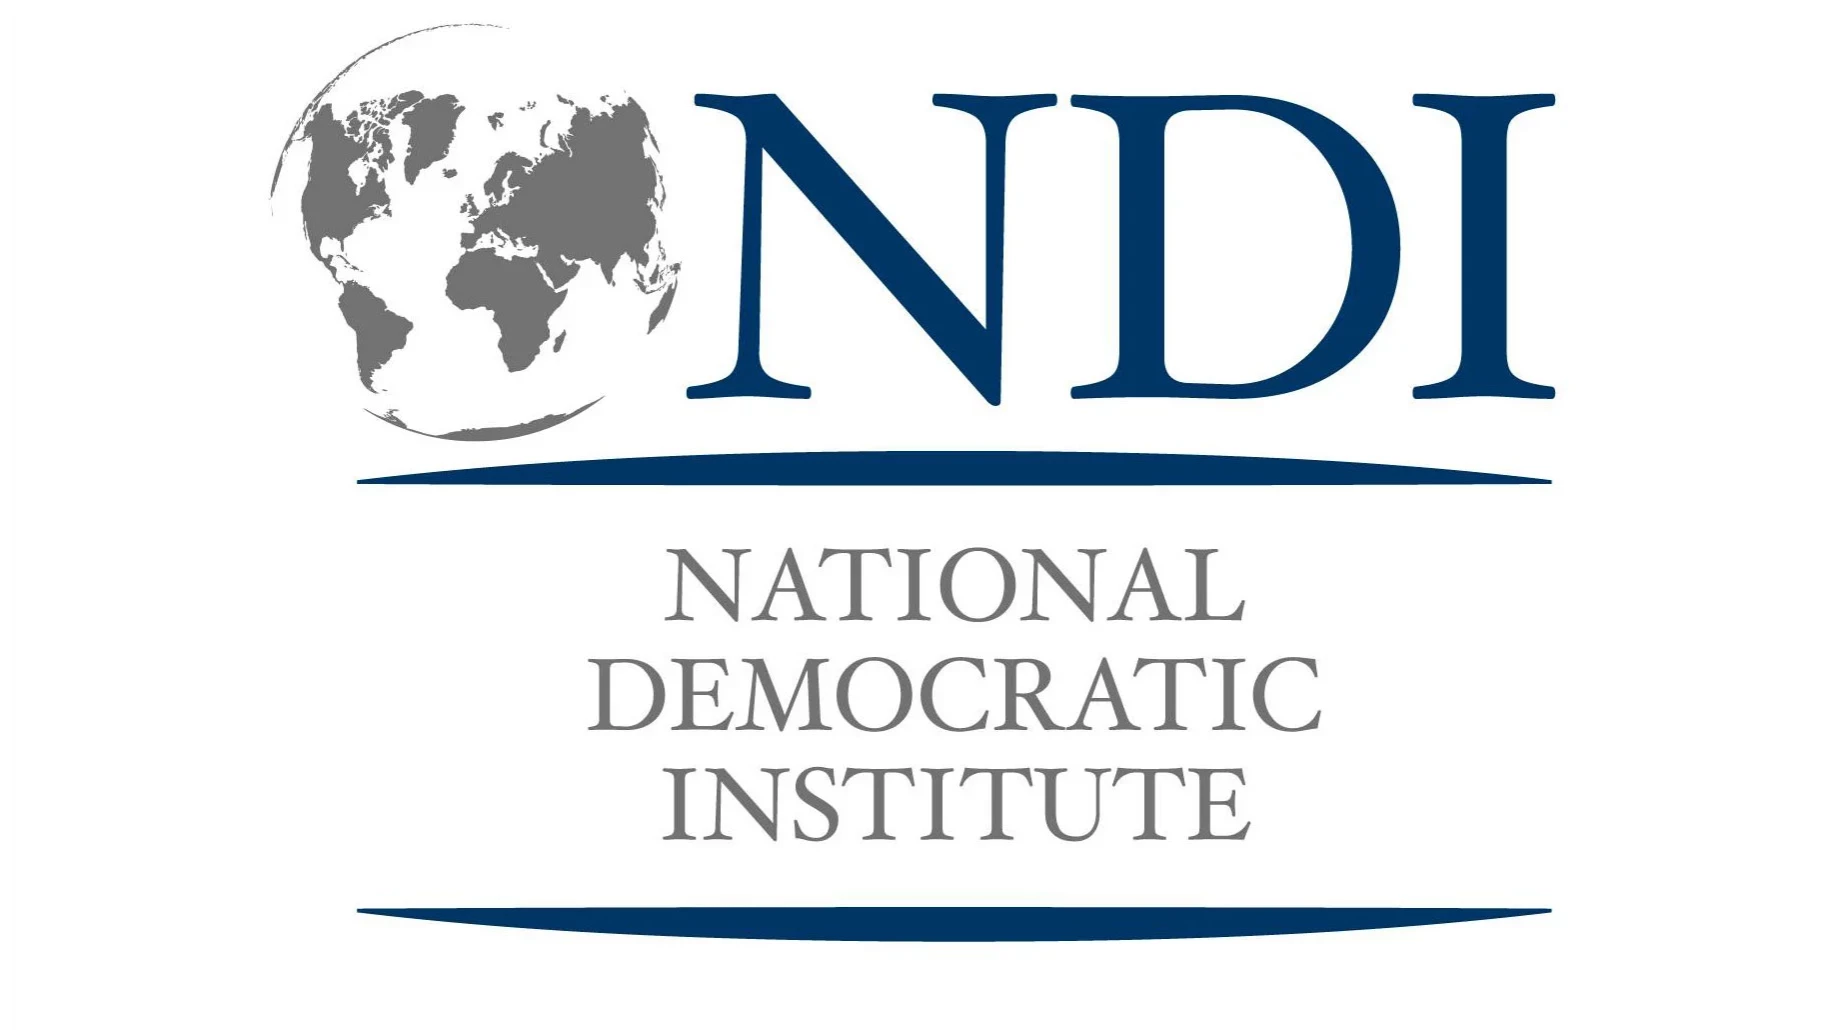 До 22 лютого — подача заявок для участі у конкурсі для отримання медіа субгранту від Національного демократичного інституту